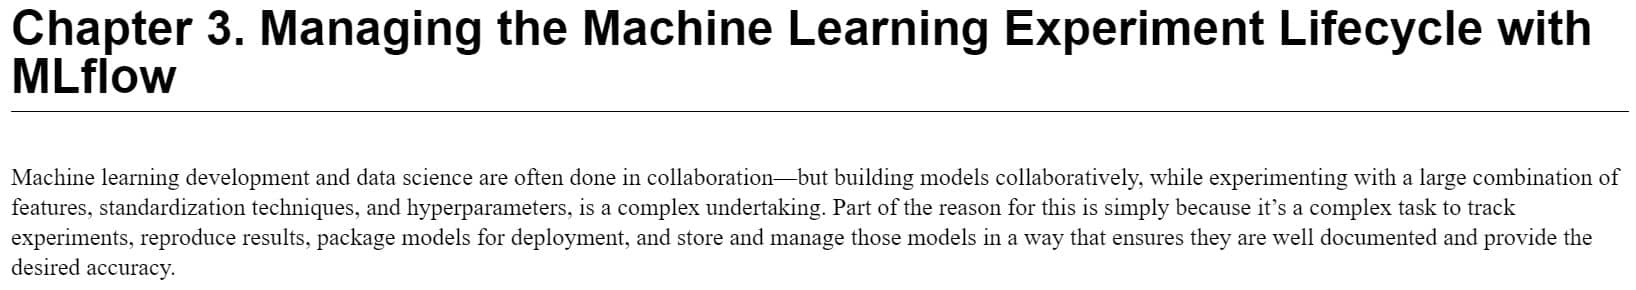 فصل 3 کتاب Scaling Machine Learning with Spark